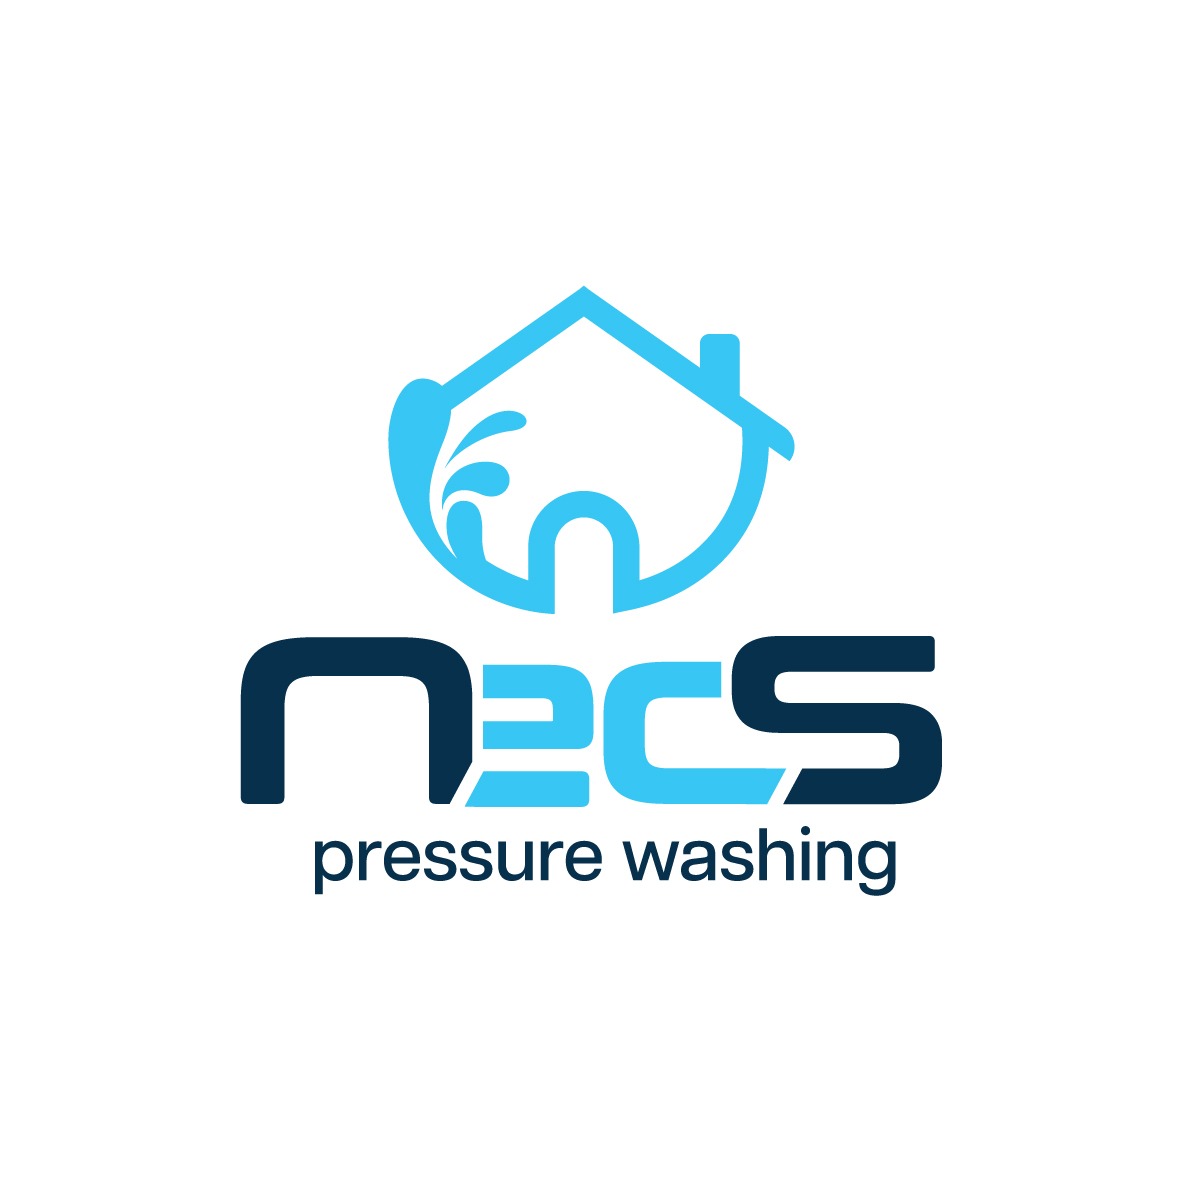 NecS Pressure Washing